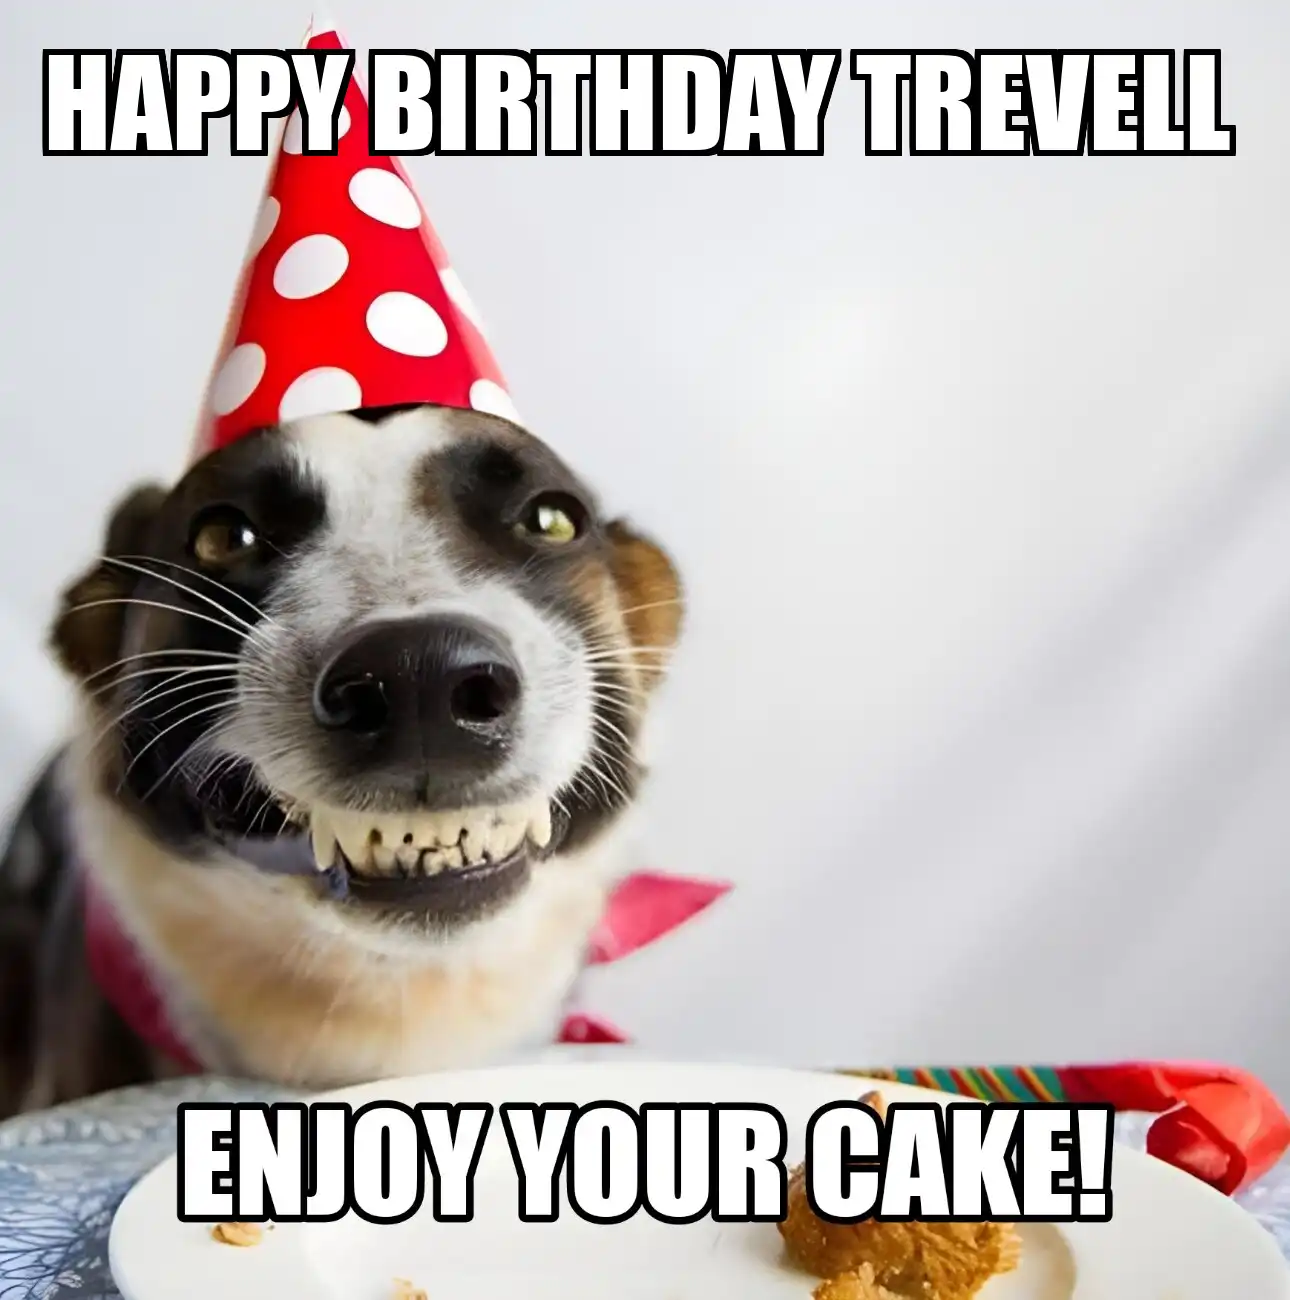 Happy Birthday Trevell Enjoy Your Cake Dog Meme